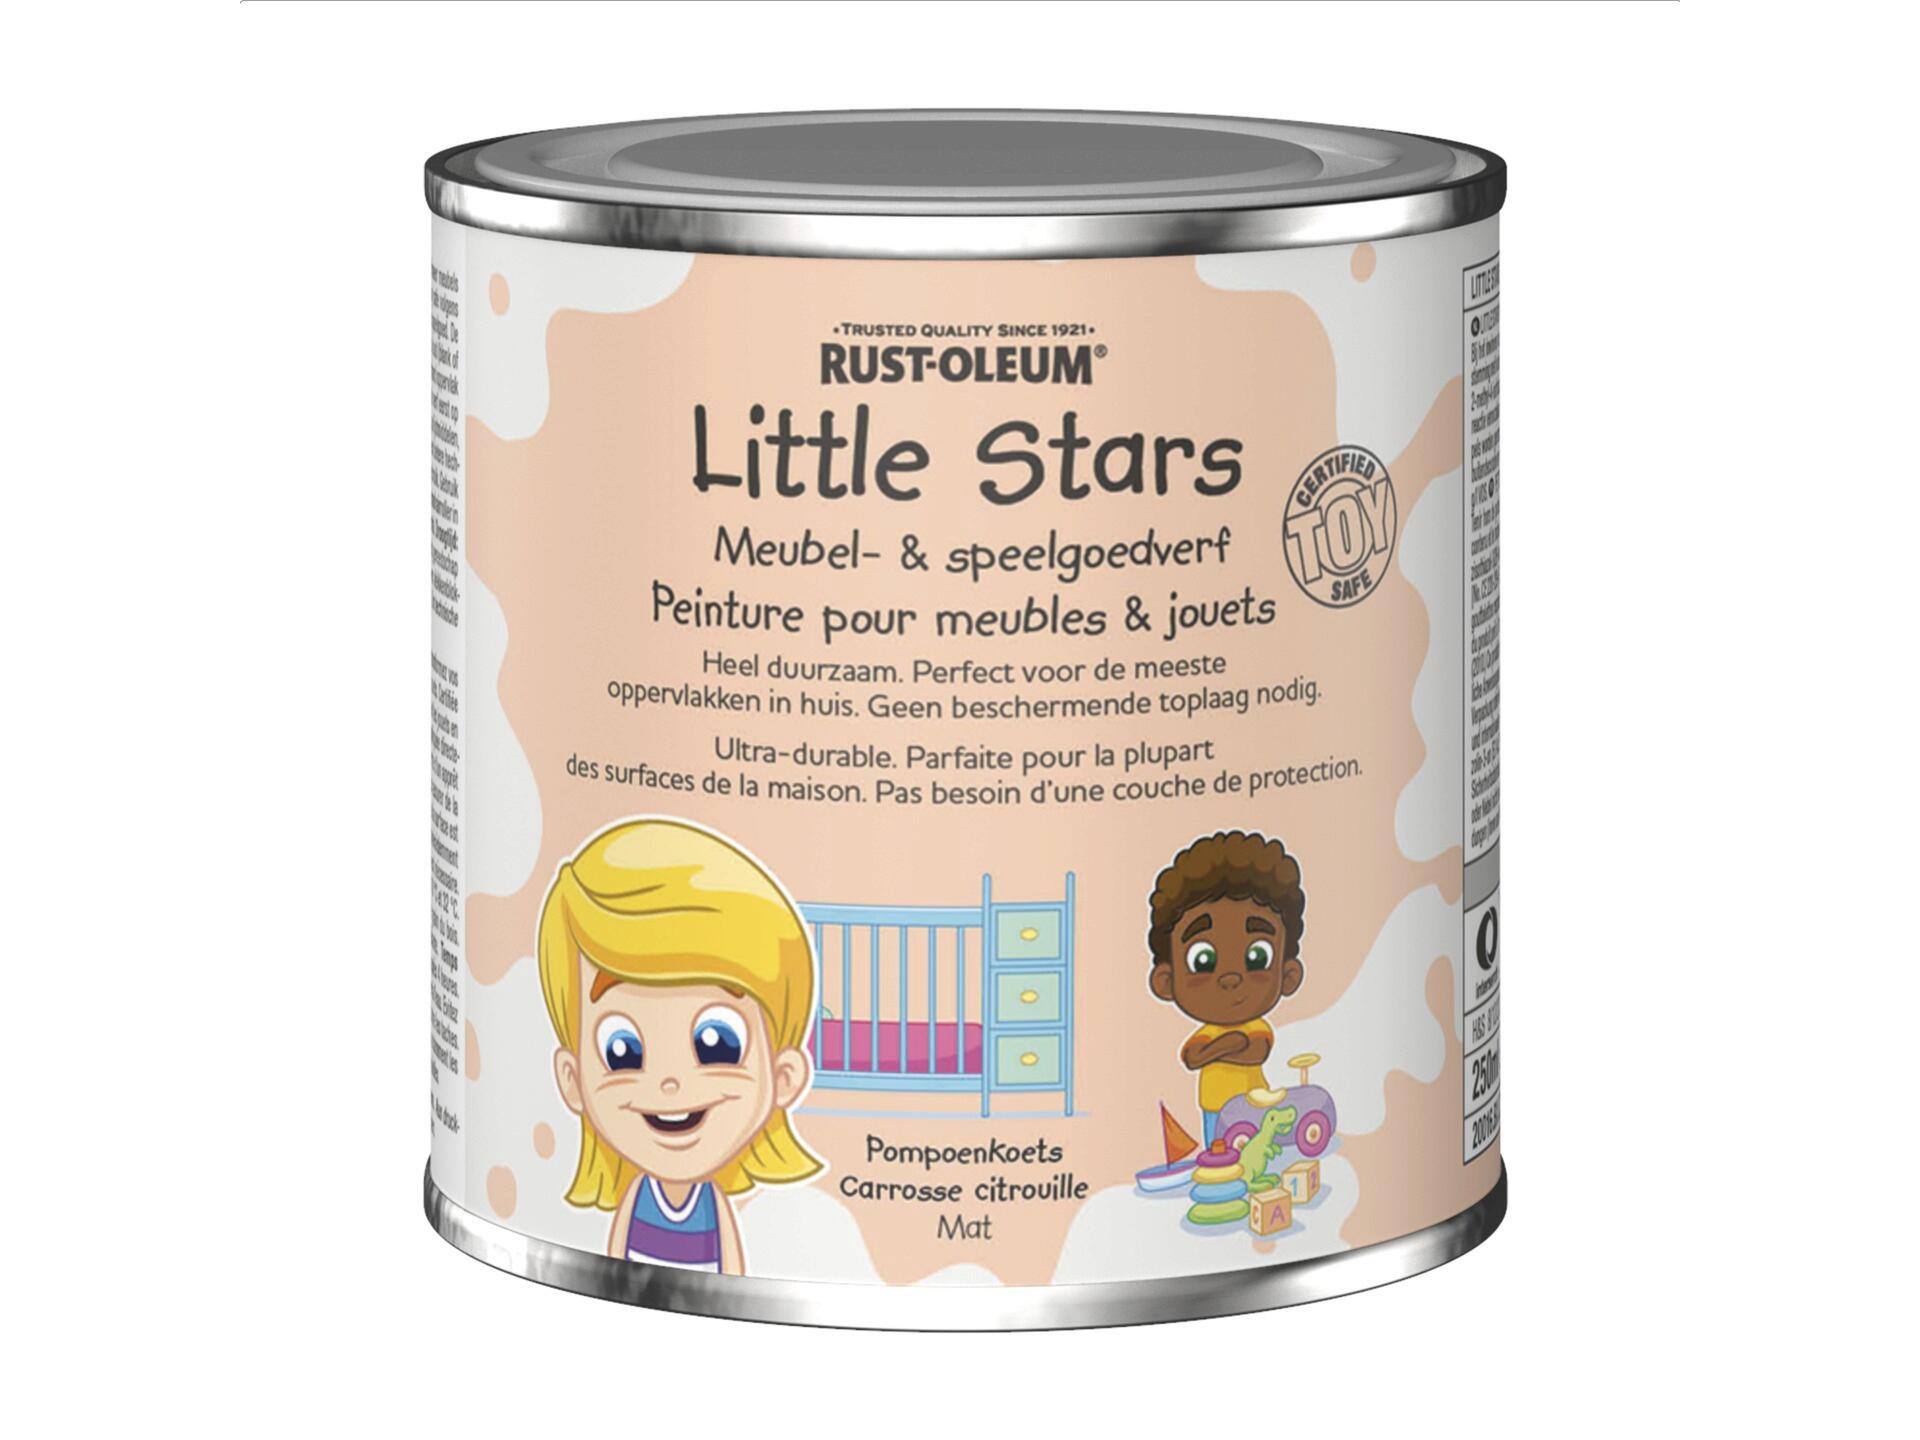 Rust-oleum Little Stars peinture pour meubles et jouets 250ml carrosse citrouille